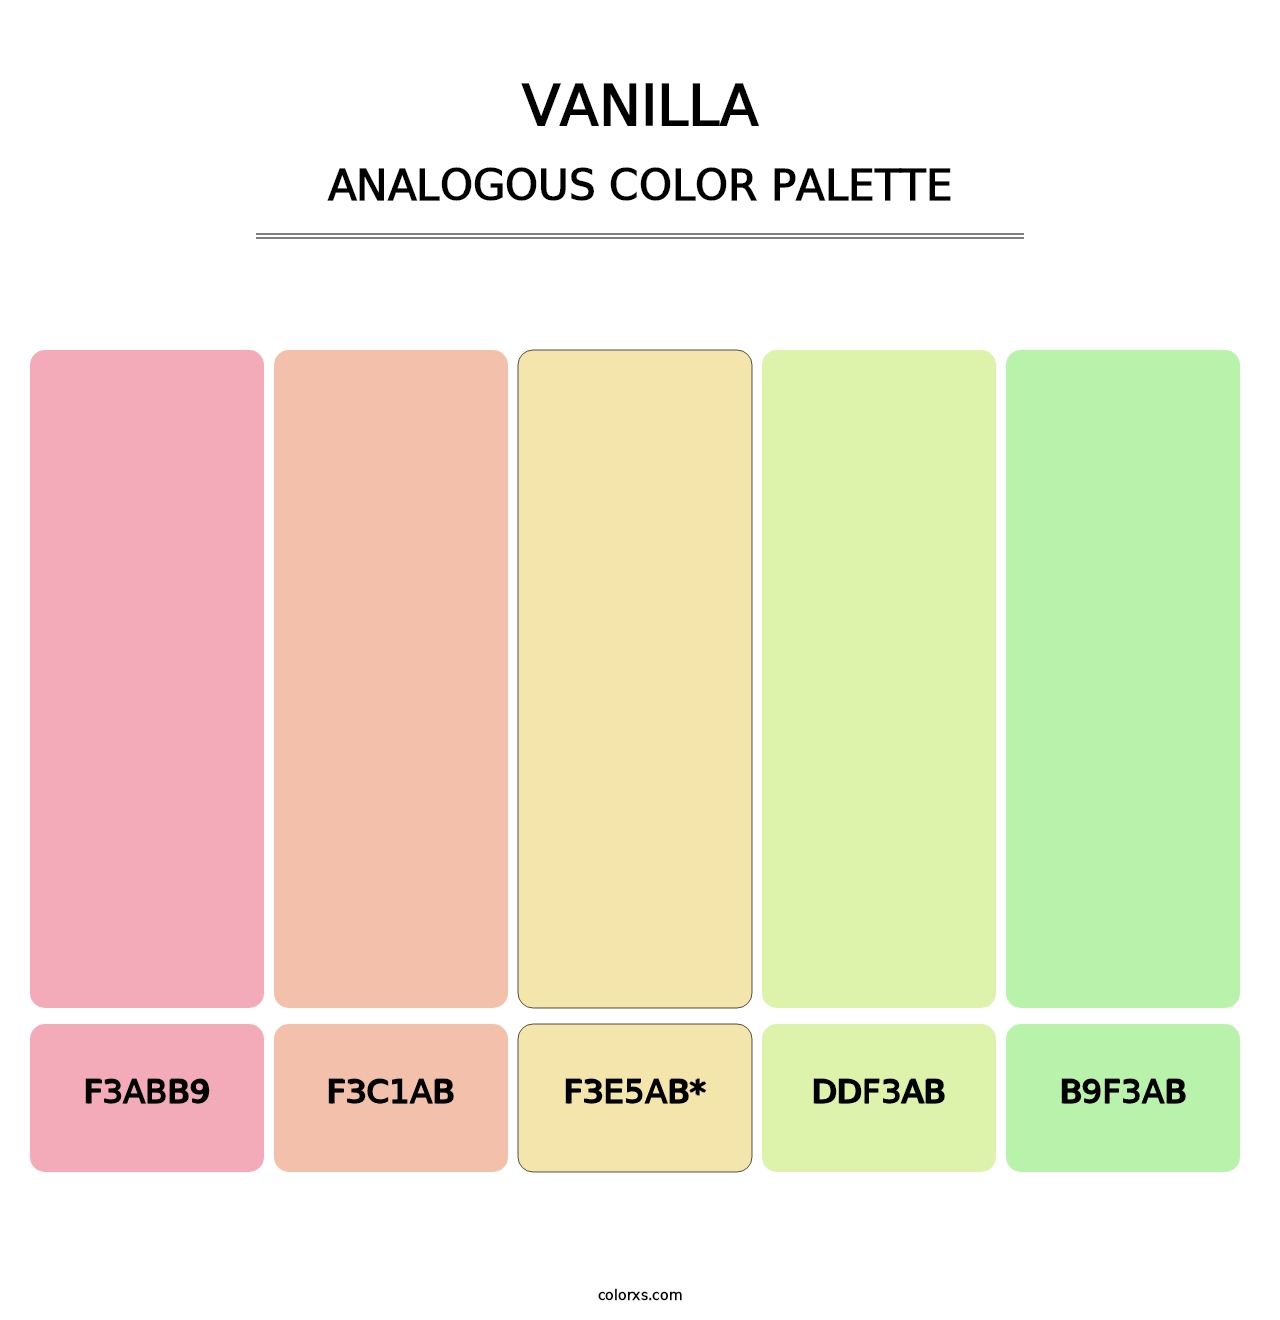 Vanilla - Analogous Color Palette